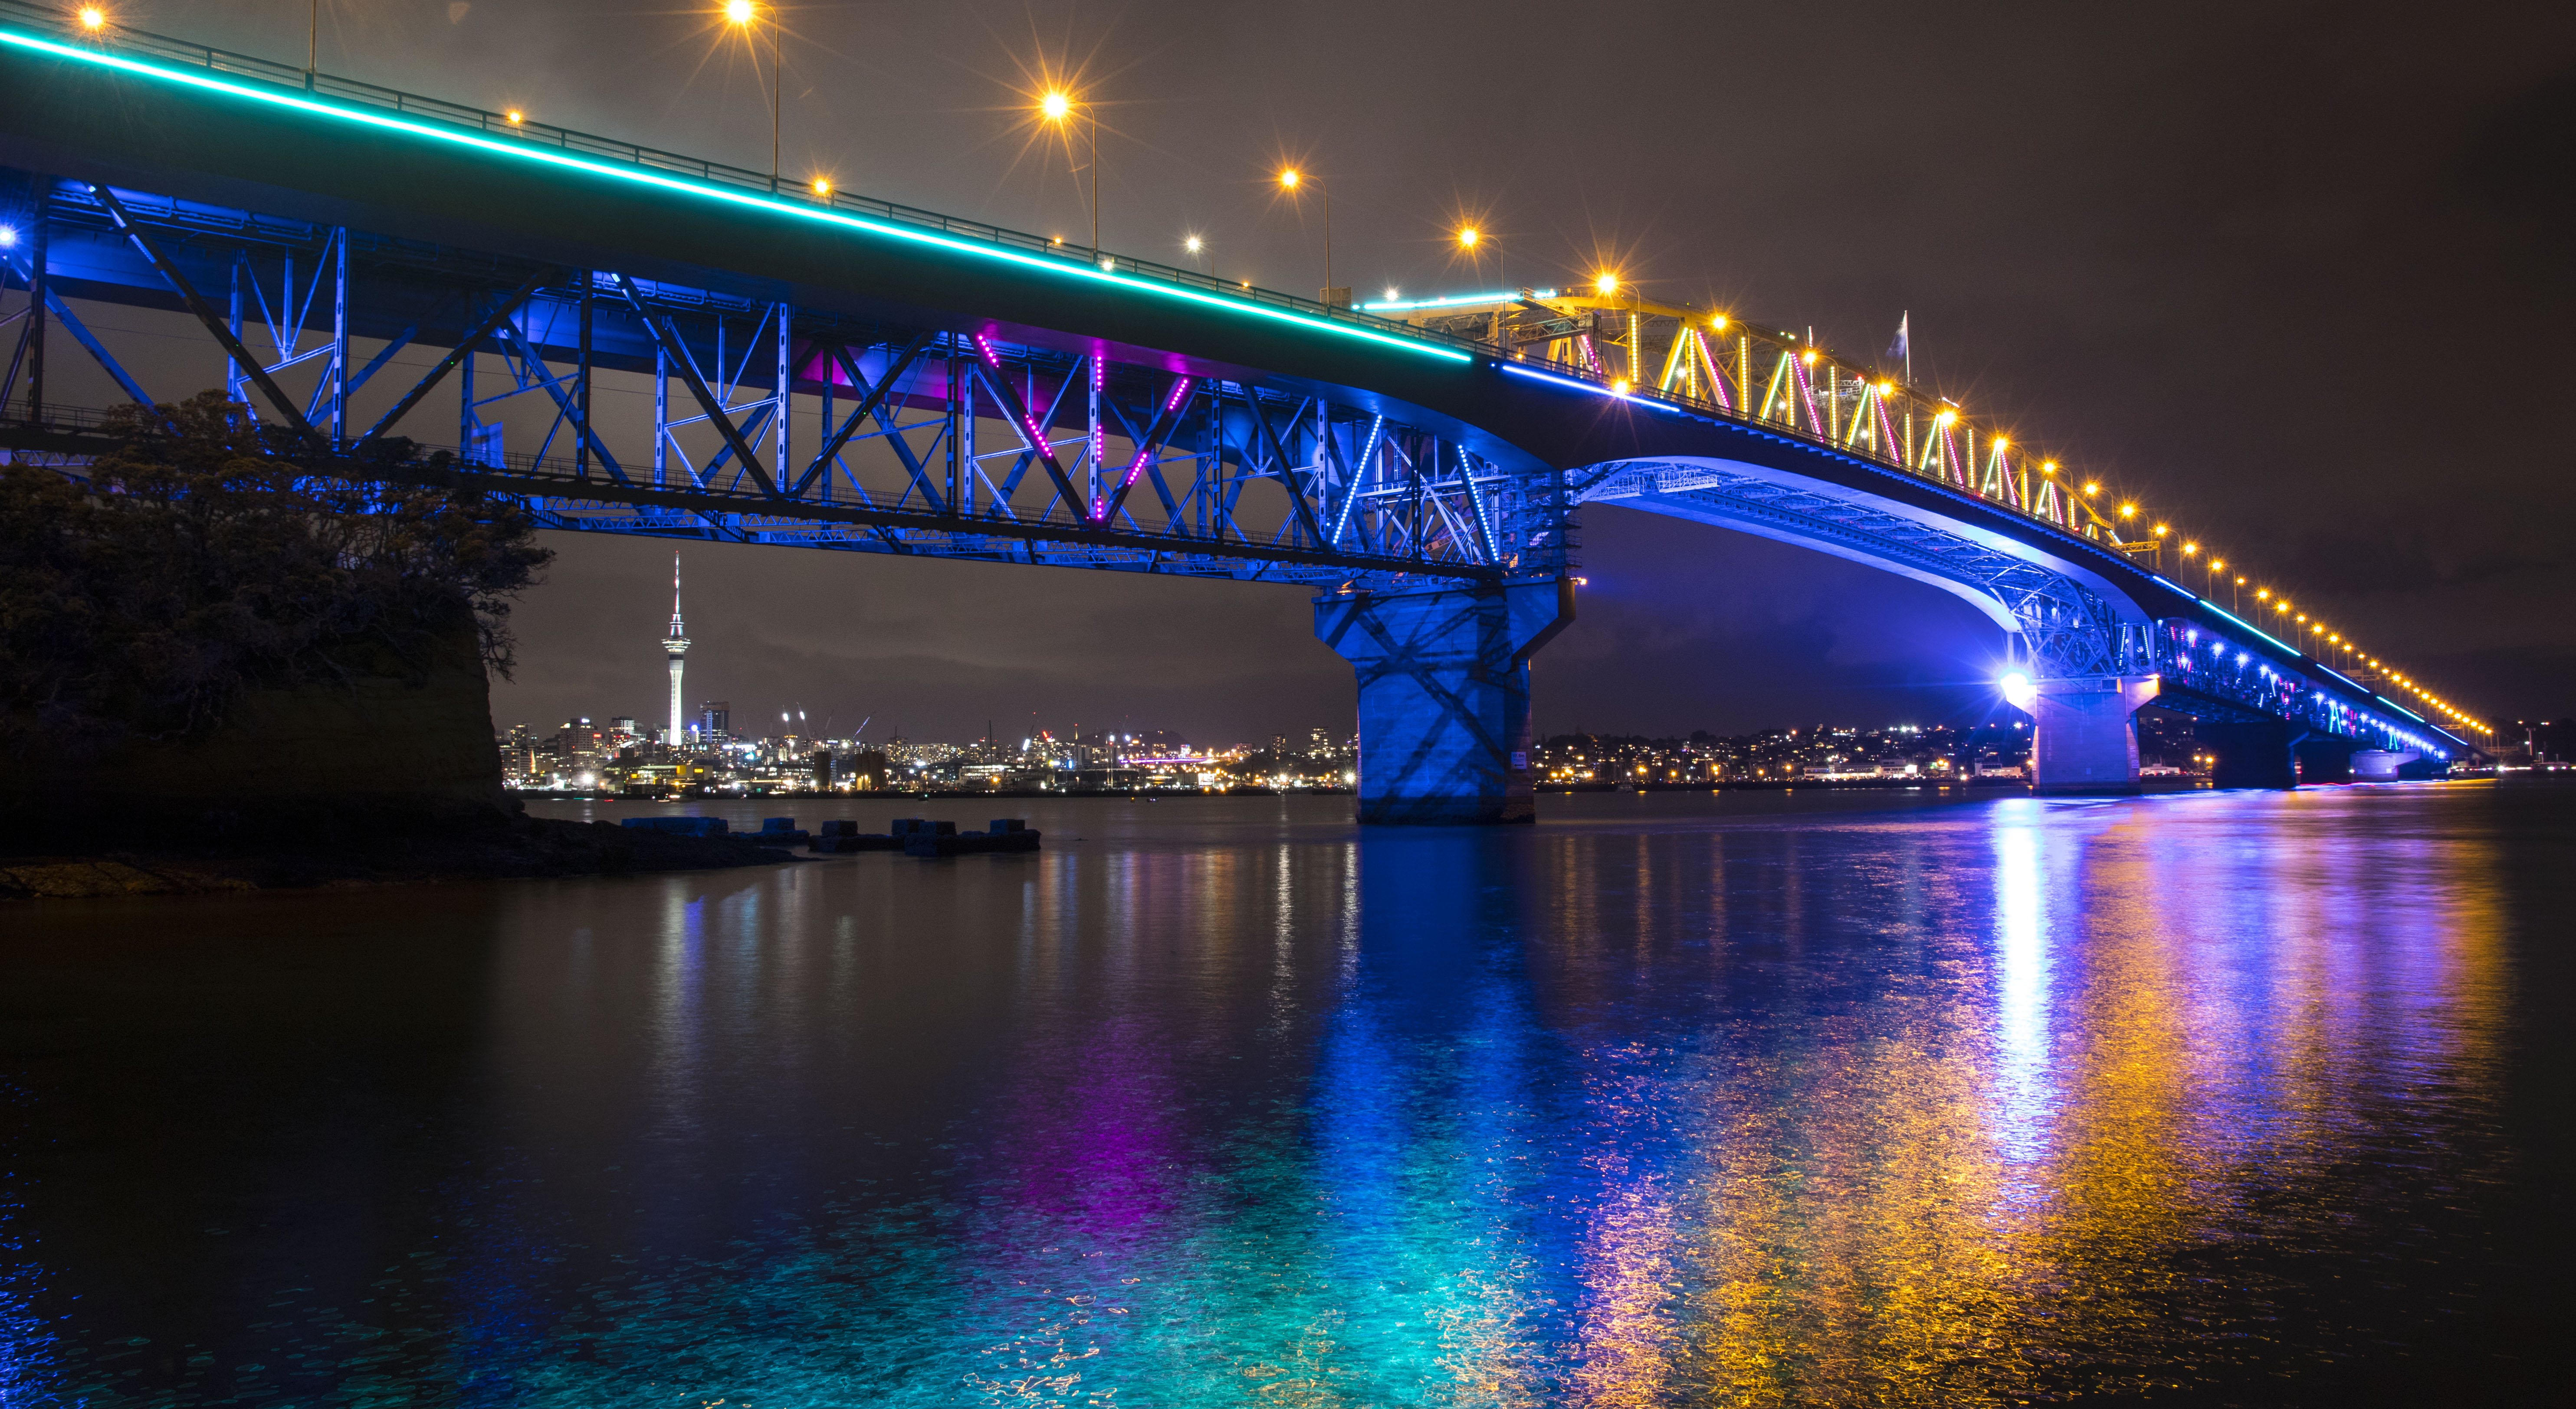 Auckland Harbour Bridge lit 002 LR.jpg